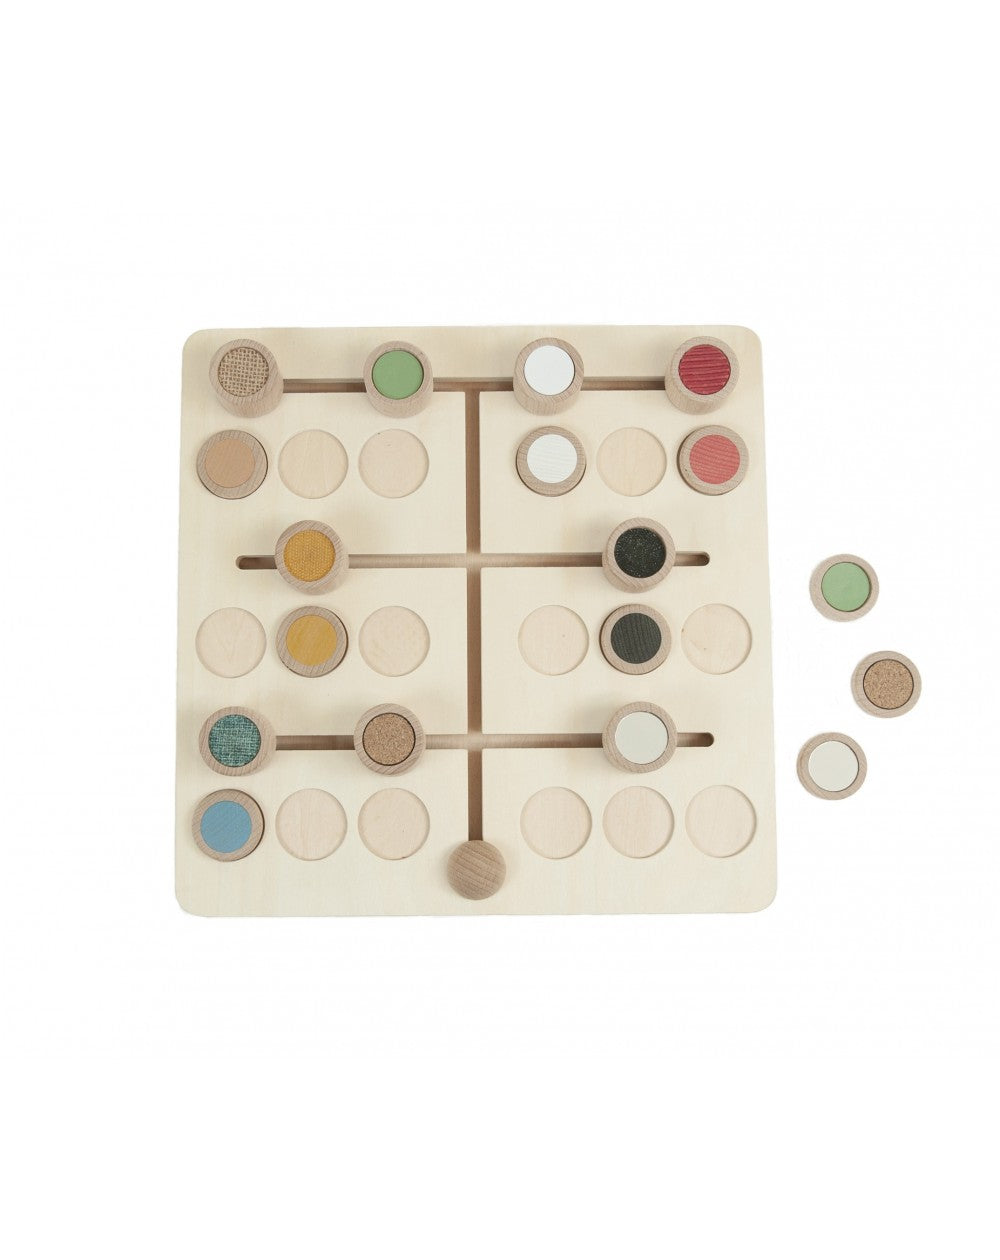 texturen-motoriekbord hout - textures matching sliding game - planche de motricité textures en bois